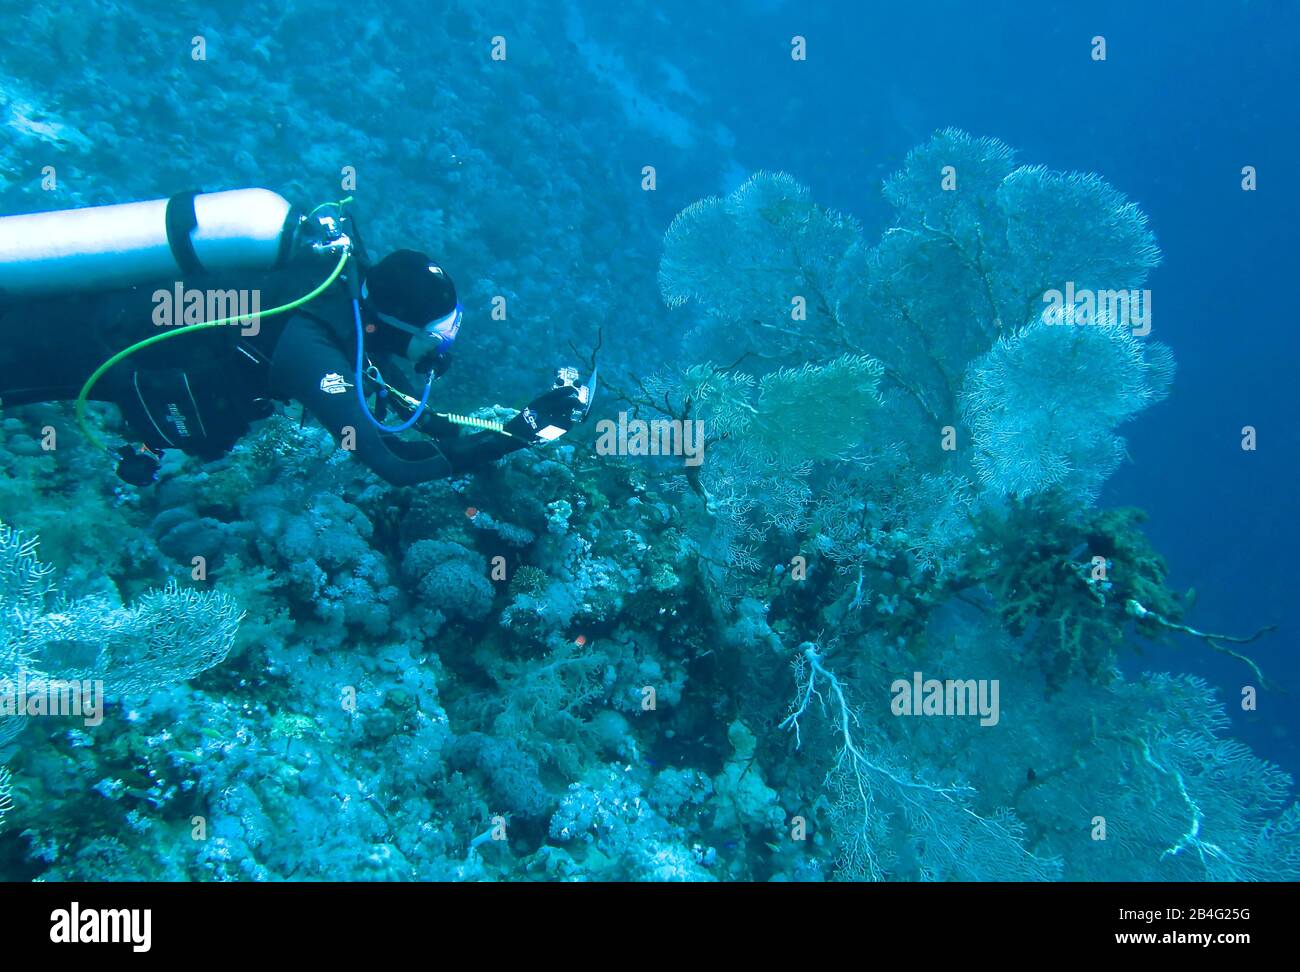 Taucher, Gorgonienkoralle (Octocorallia), Brother Islands, Rotes Meer, Aegypten / Ägypten Stock Photo